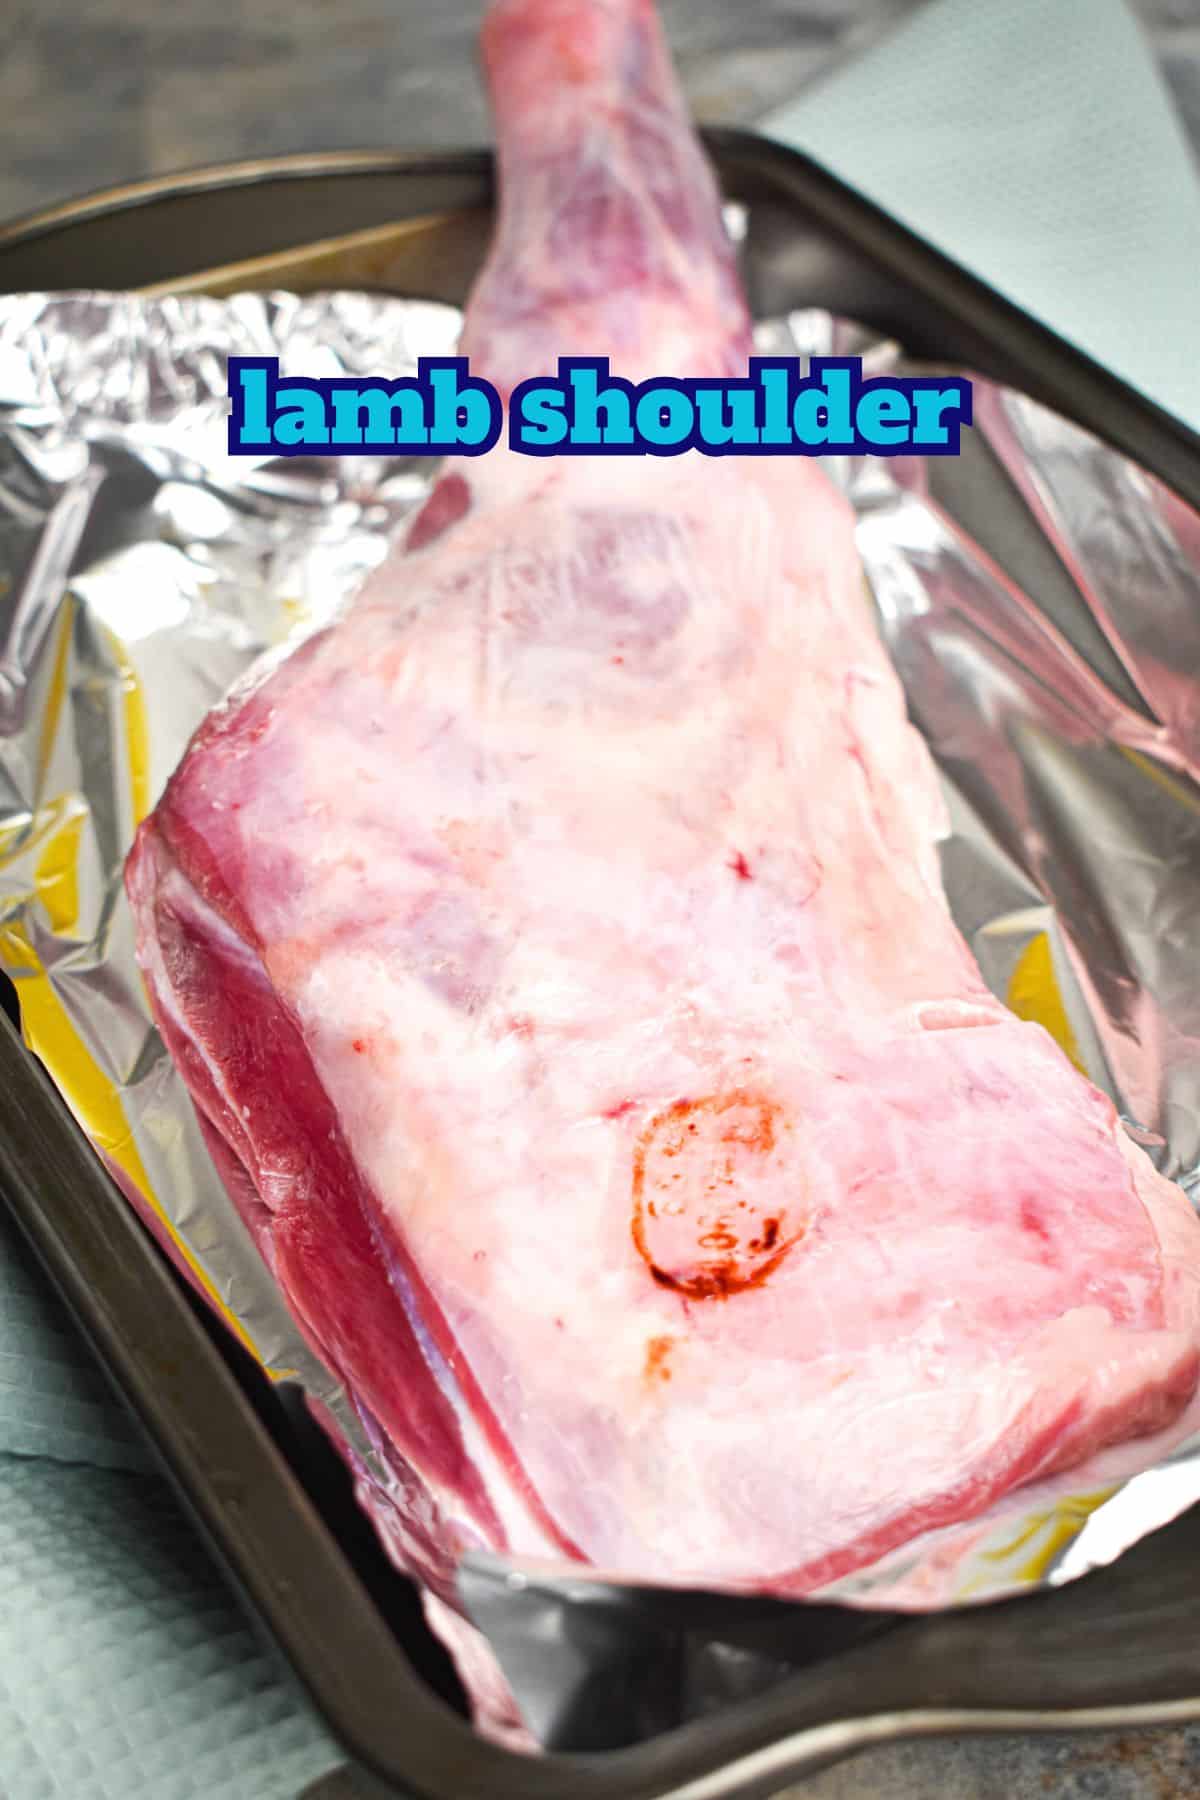 Raw lamb shoulder.